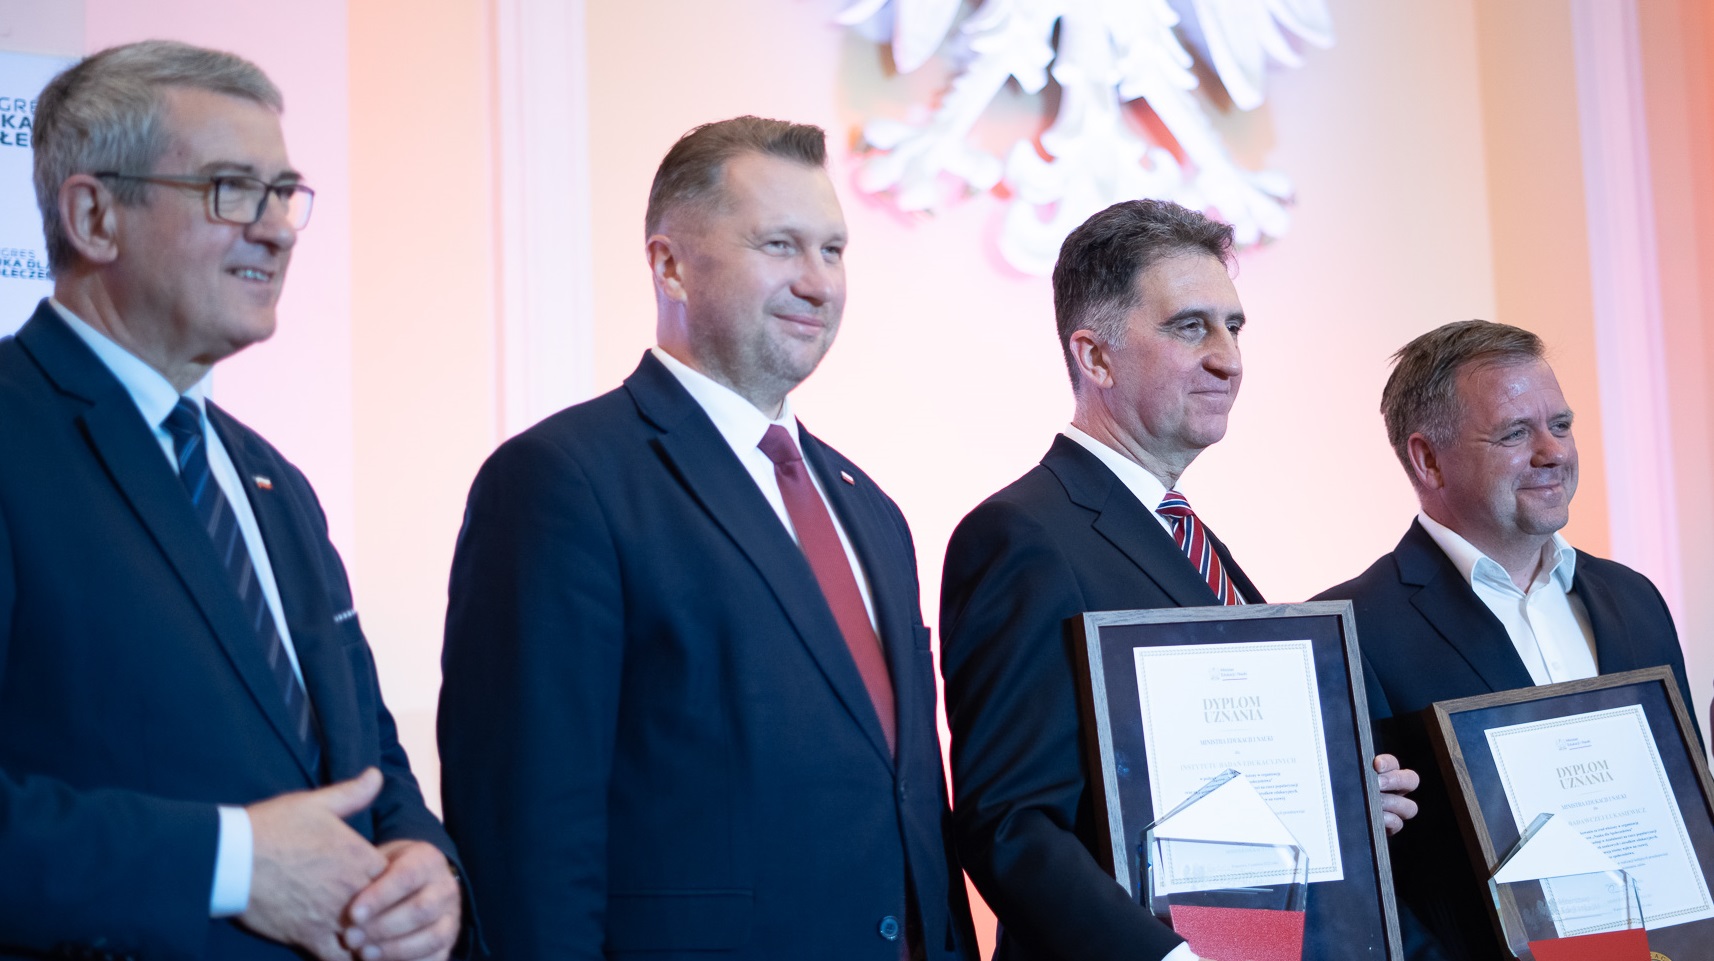 Od lewej: Wojciech Murdzek, Sekretarzem Stanu MEiN; Przemysław Czarnek, Minister Edukacji i Nauki; Paweł Gondek, Zastępca Dyrektora IBE ds. Naukowych